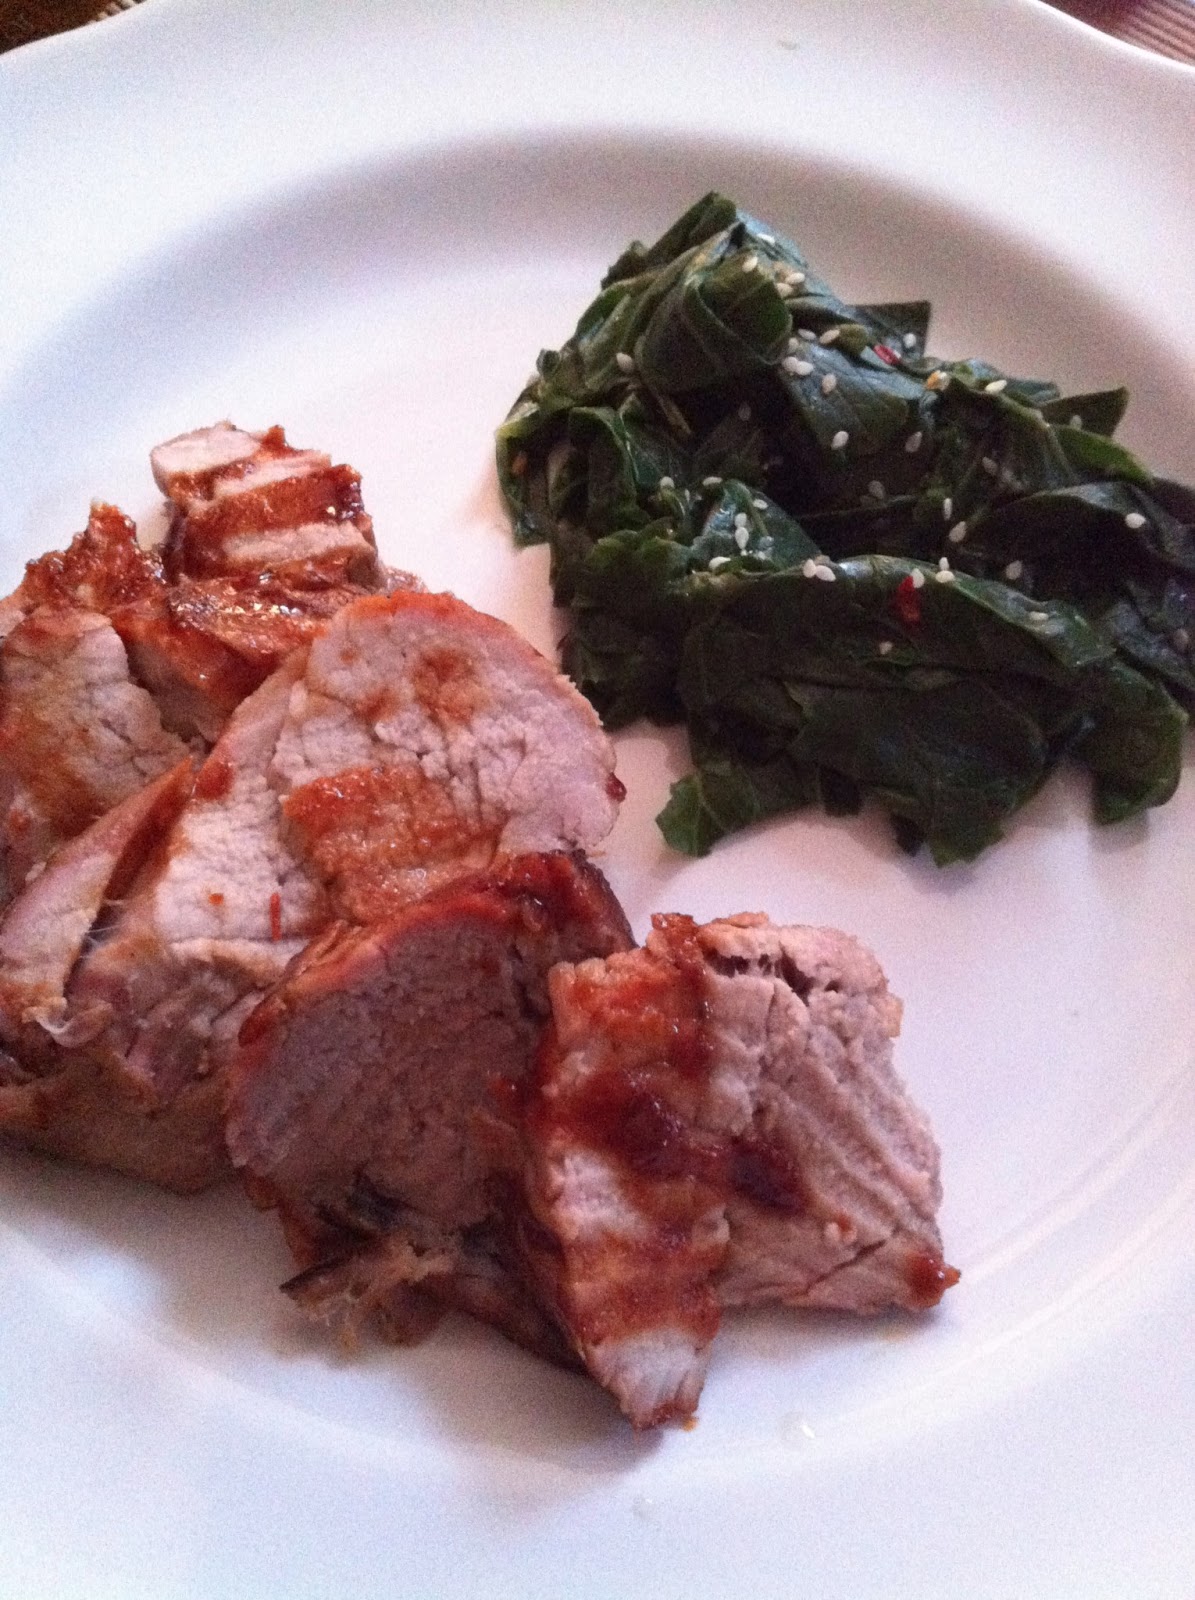 taylor made: Asian brined pork loin with a hoisin glaze & sesame greens